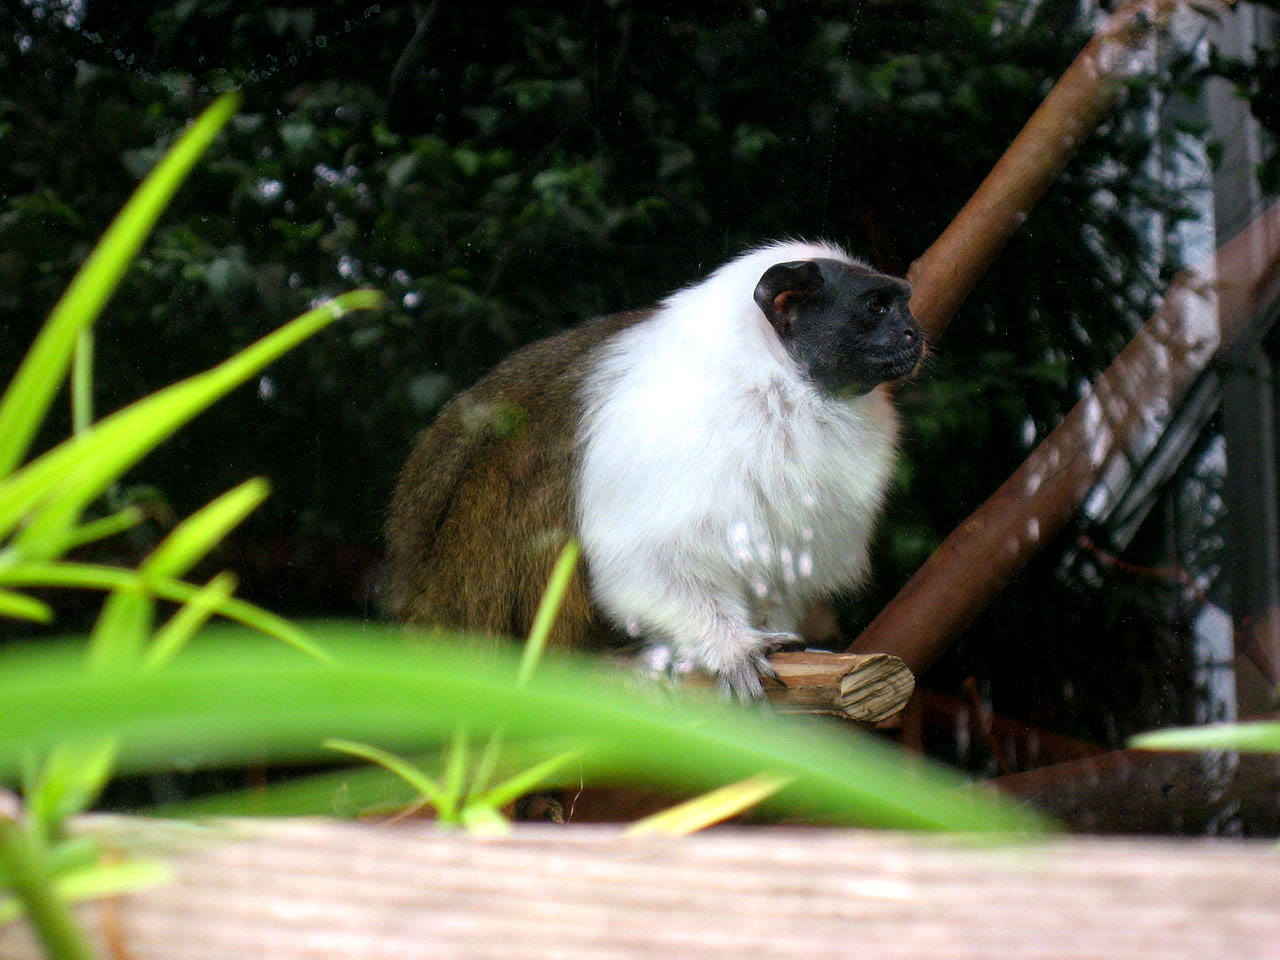 Sauim-de-coleira ([i]Sanginus bicolor[/i]) no zoológico de São Francisco. Foto: Seglea / Wikimedia Commons